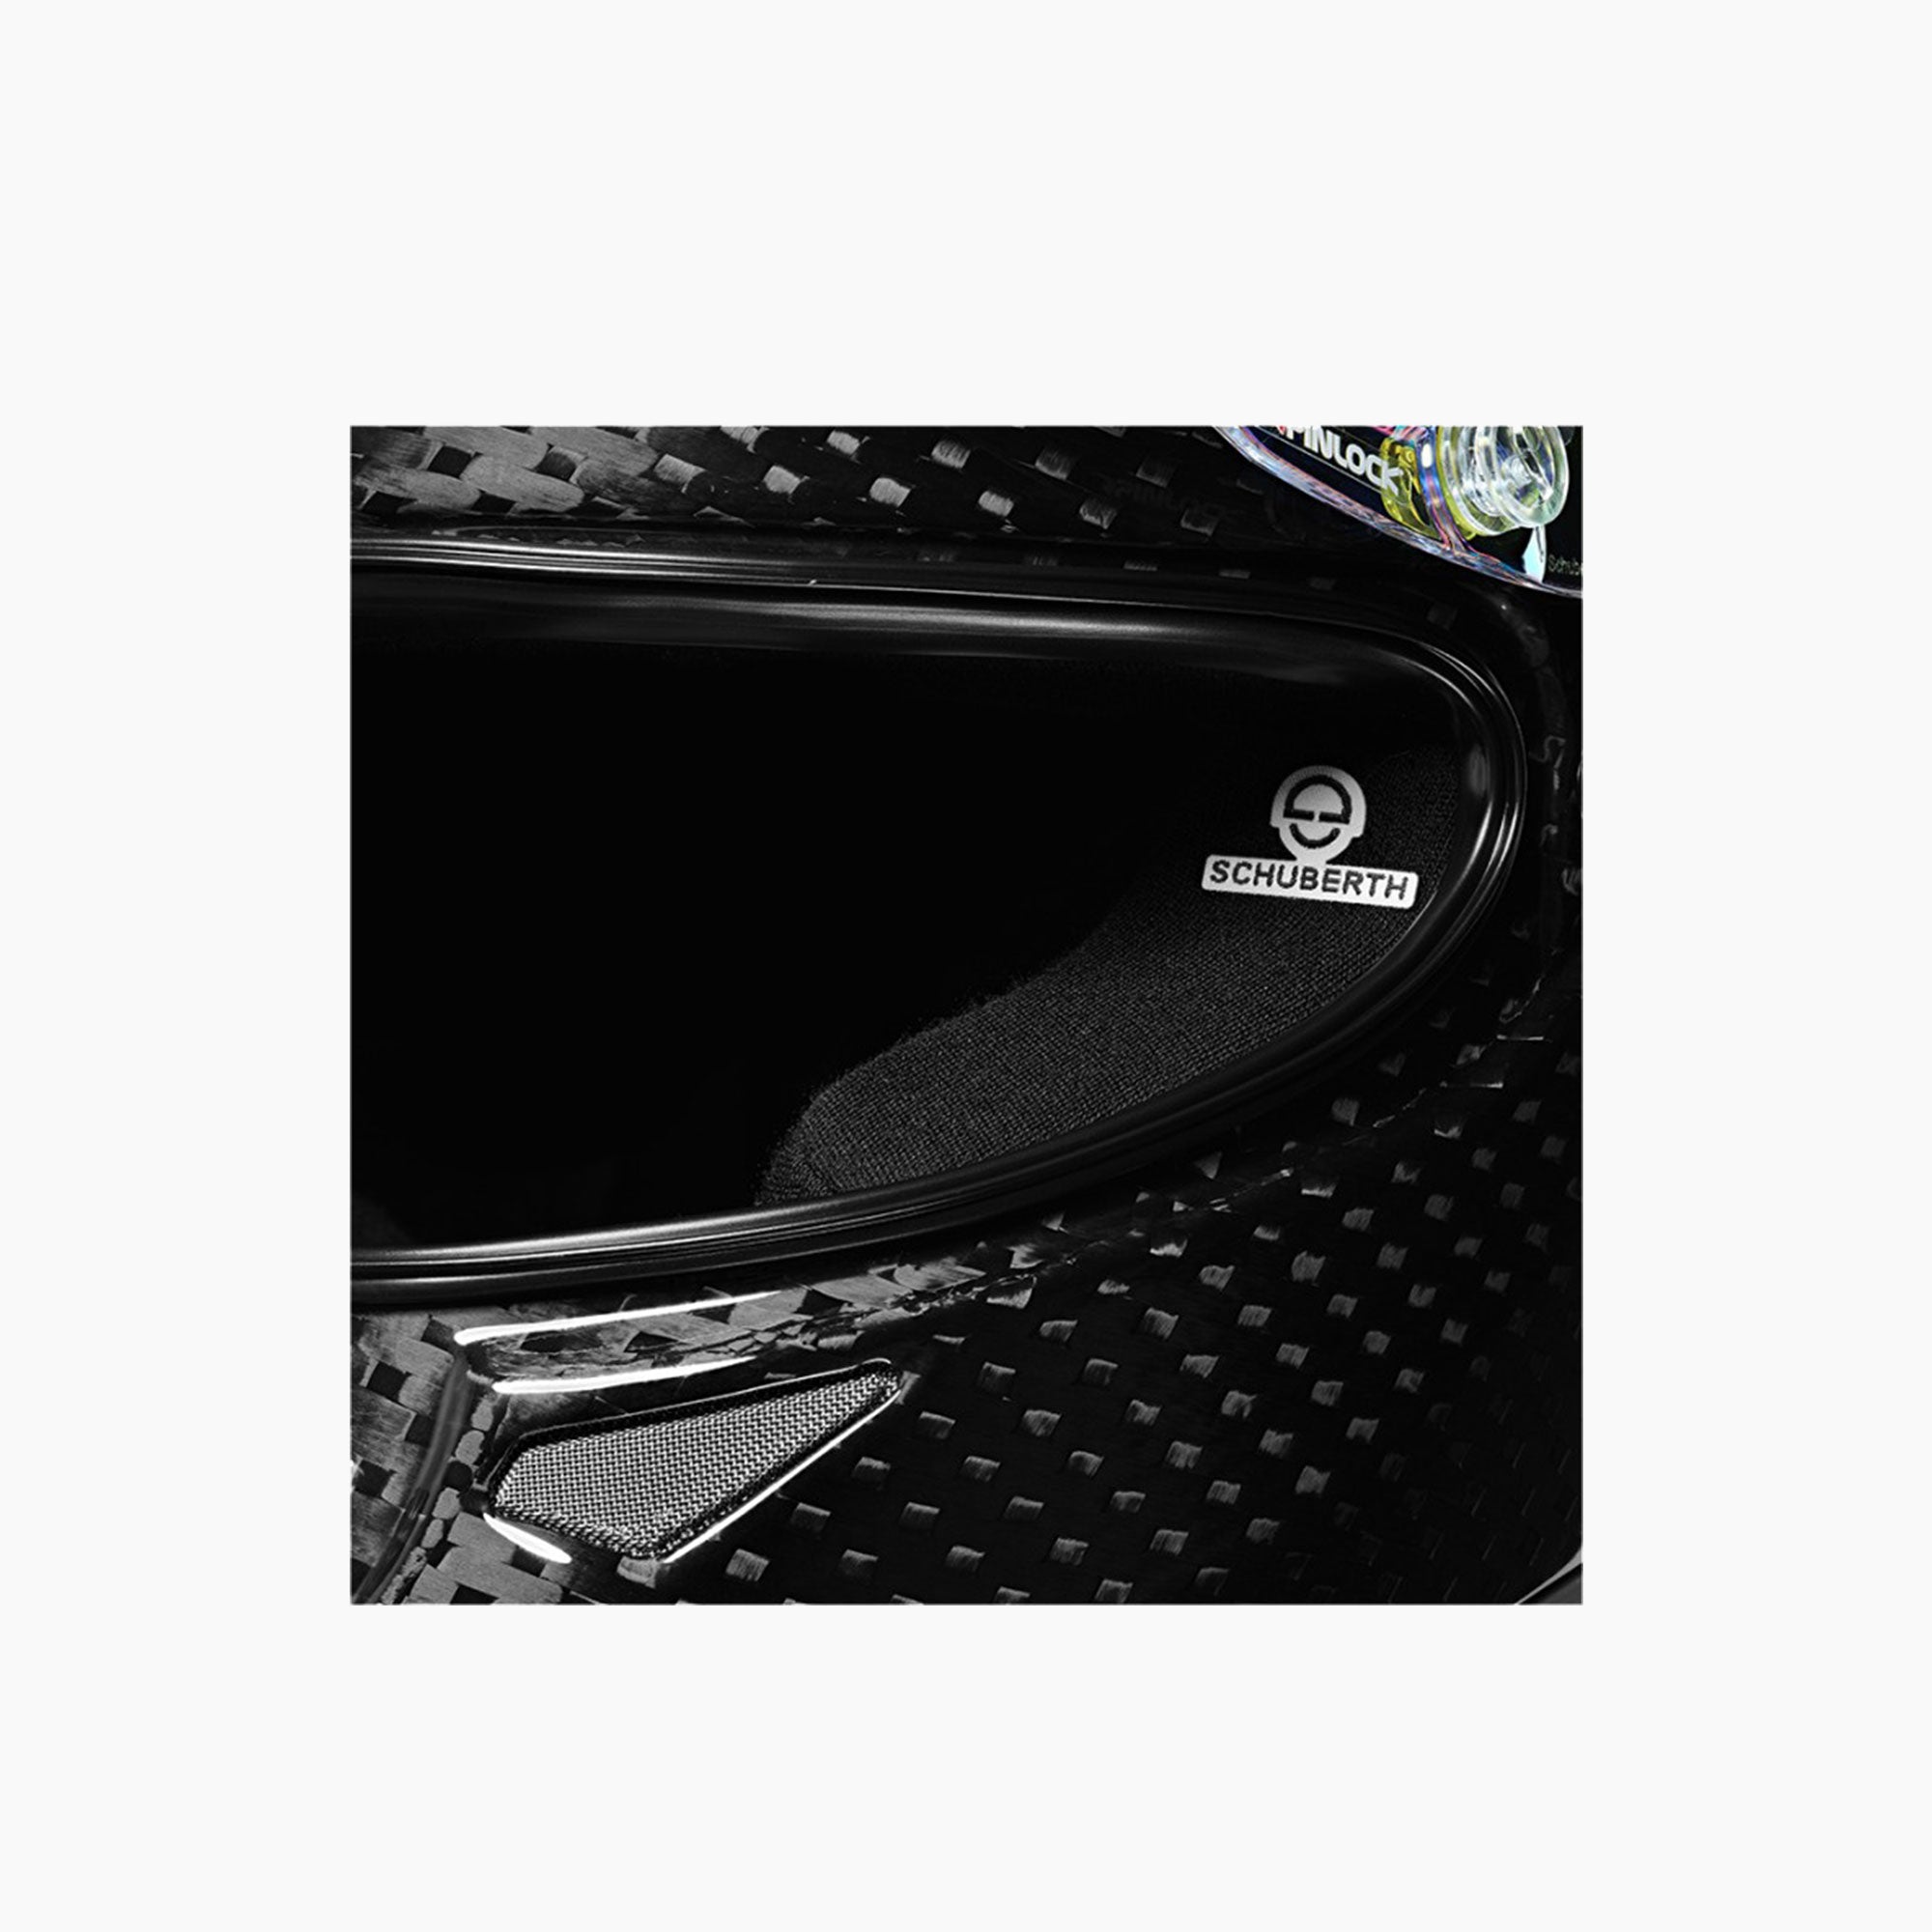 Schuberth | SF3 ABP Carbon Racing Helmet-Racing Helmet-Schuberth-gpx-store